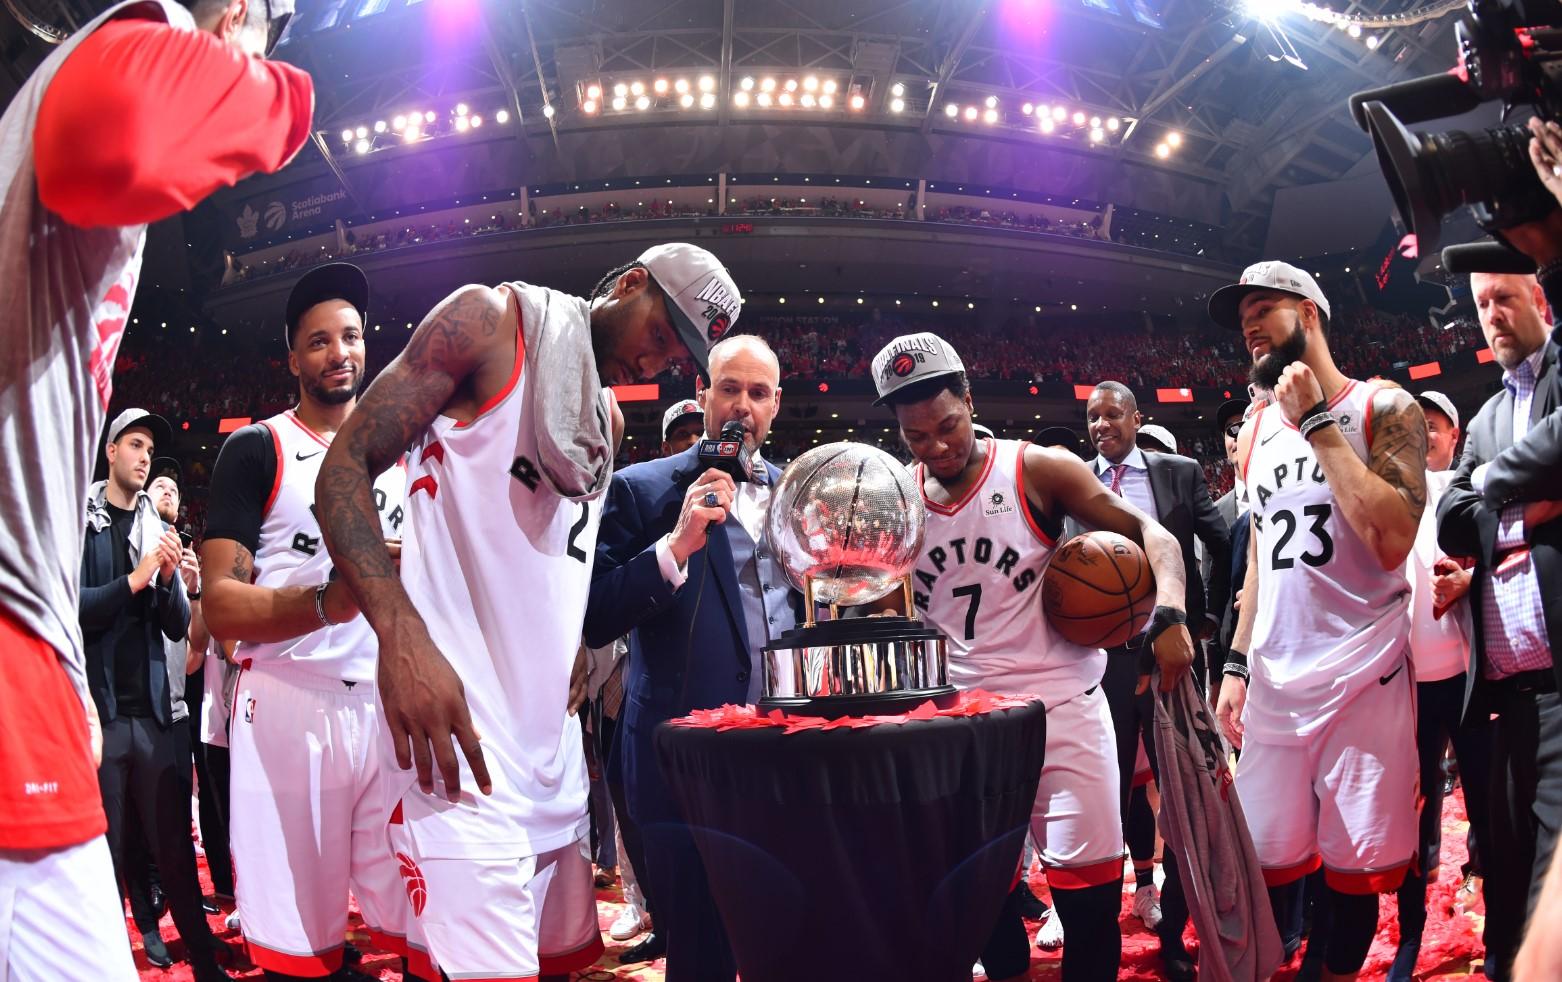 Prvi put u historiji Toronto u NBA finalu